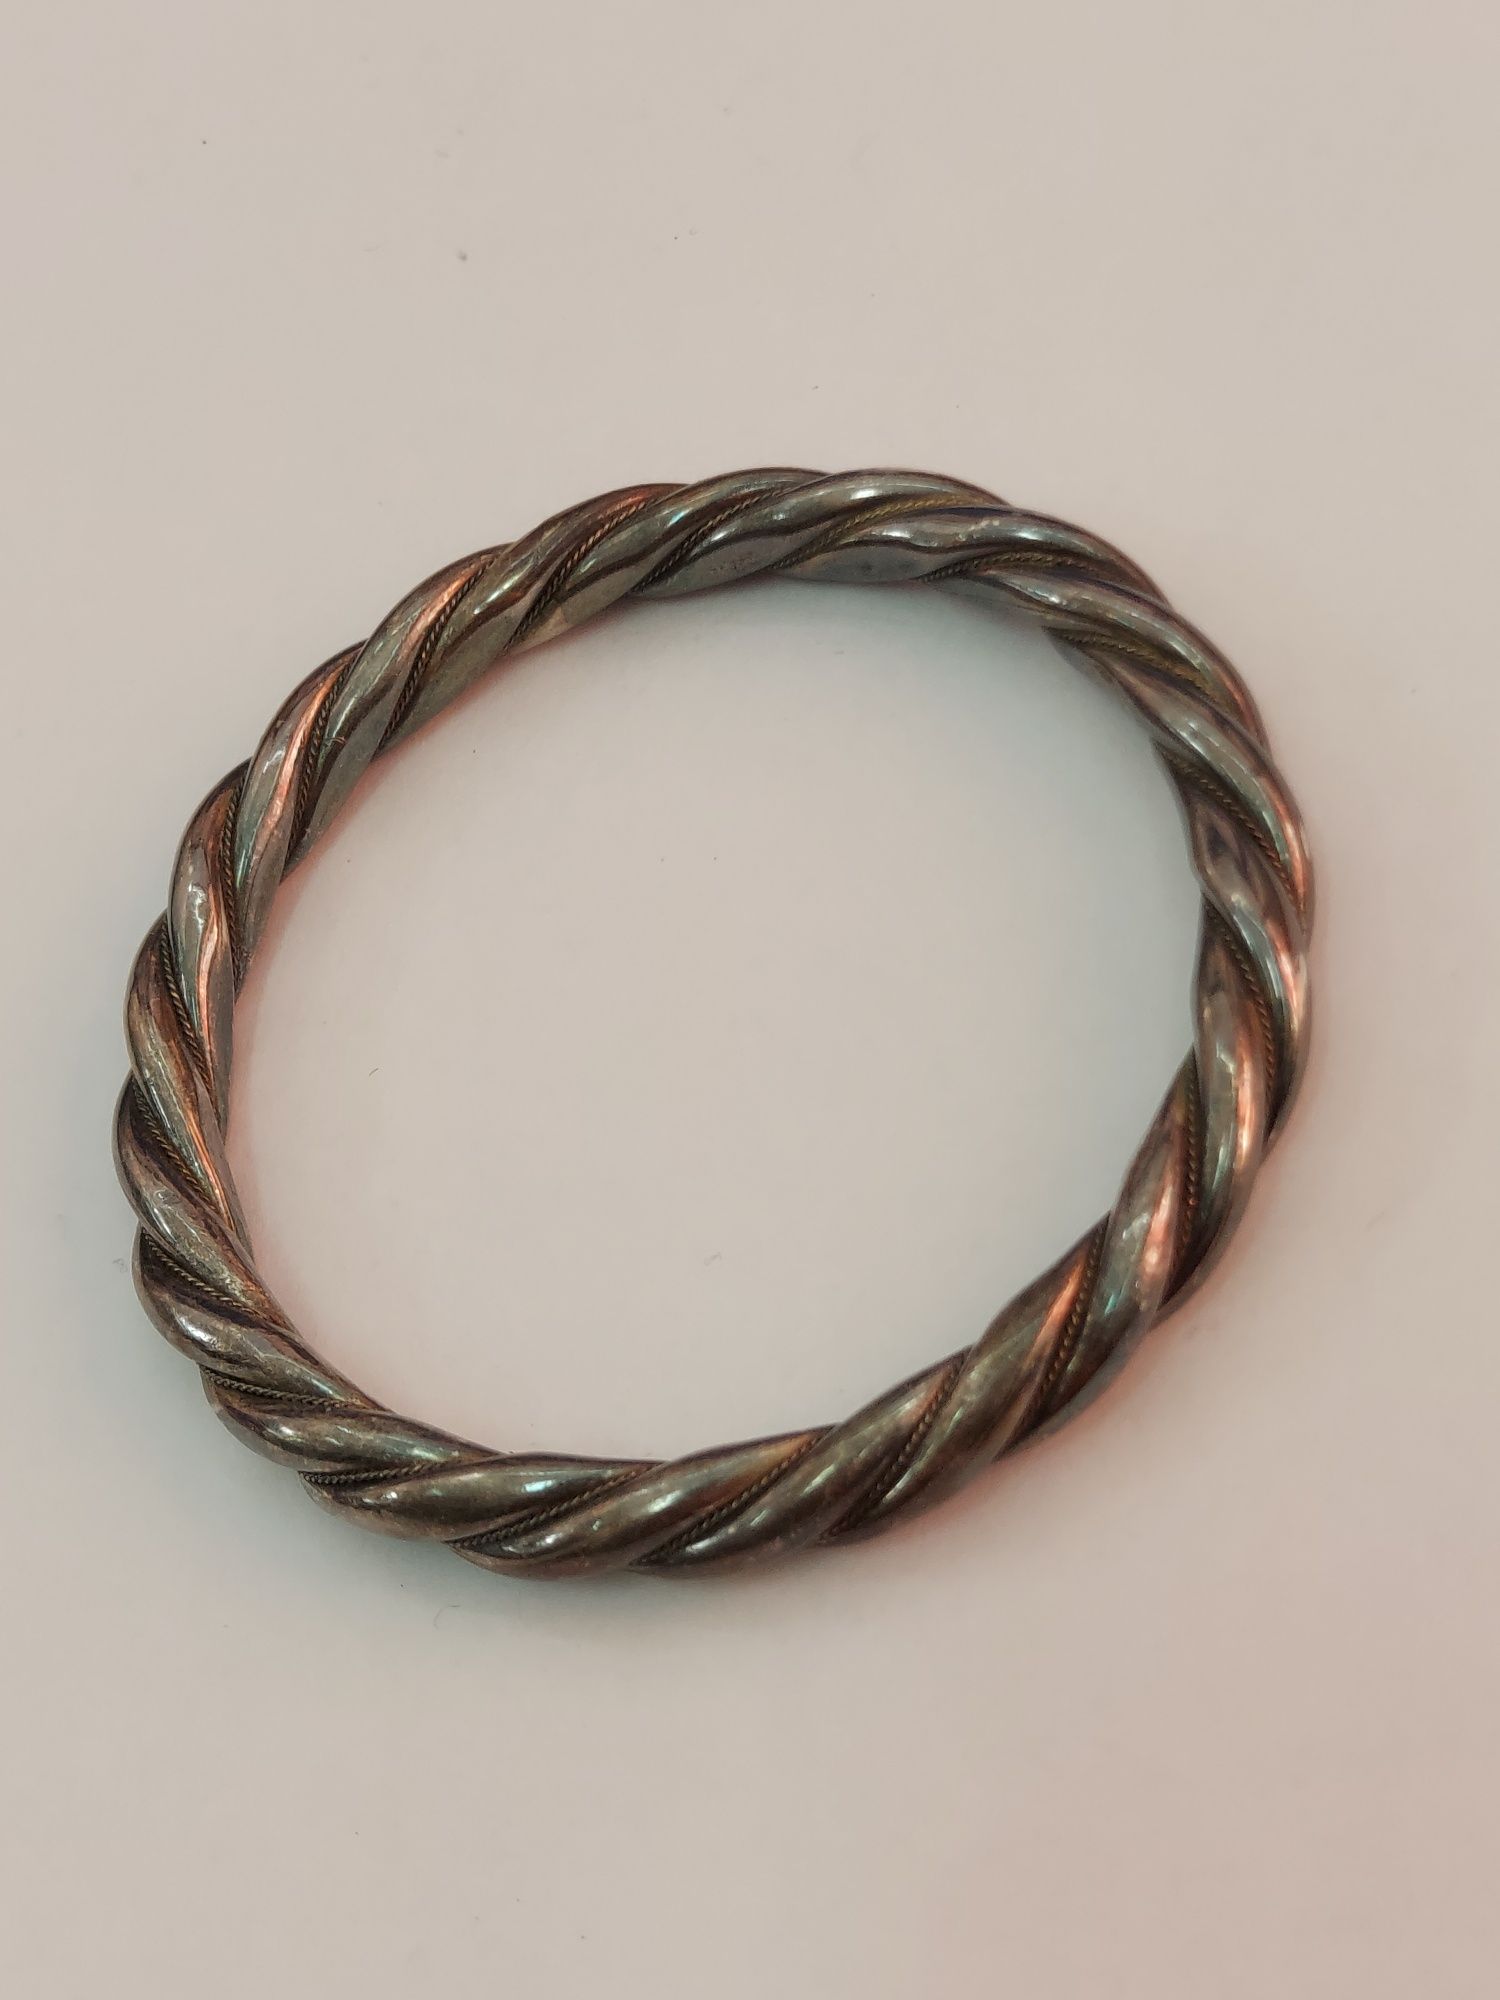 Starodawna srebrna damska bransoletka próby 900